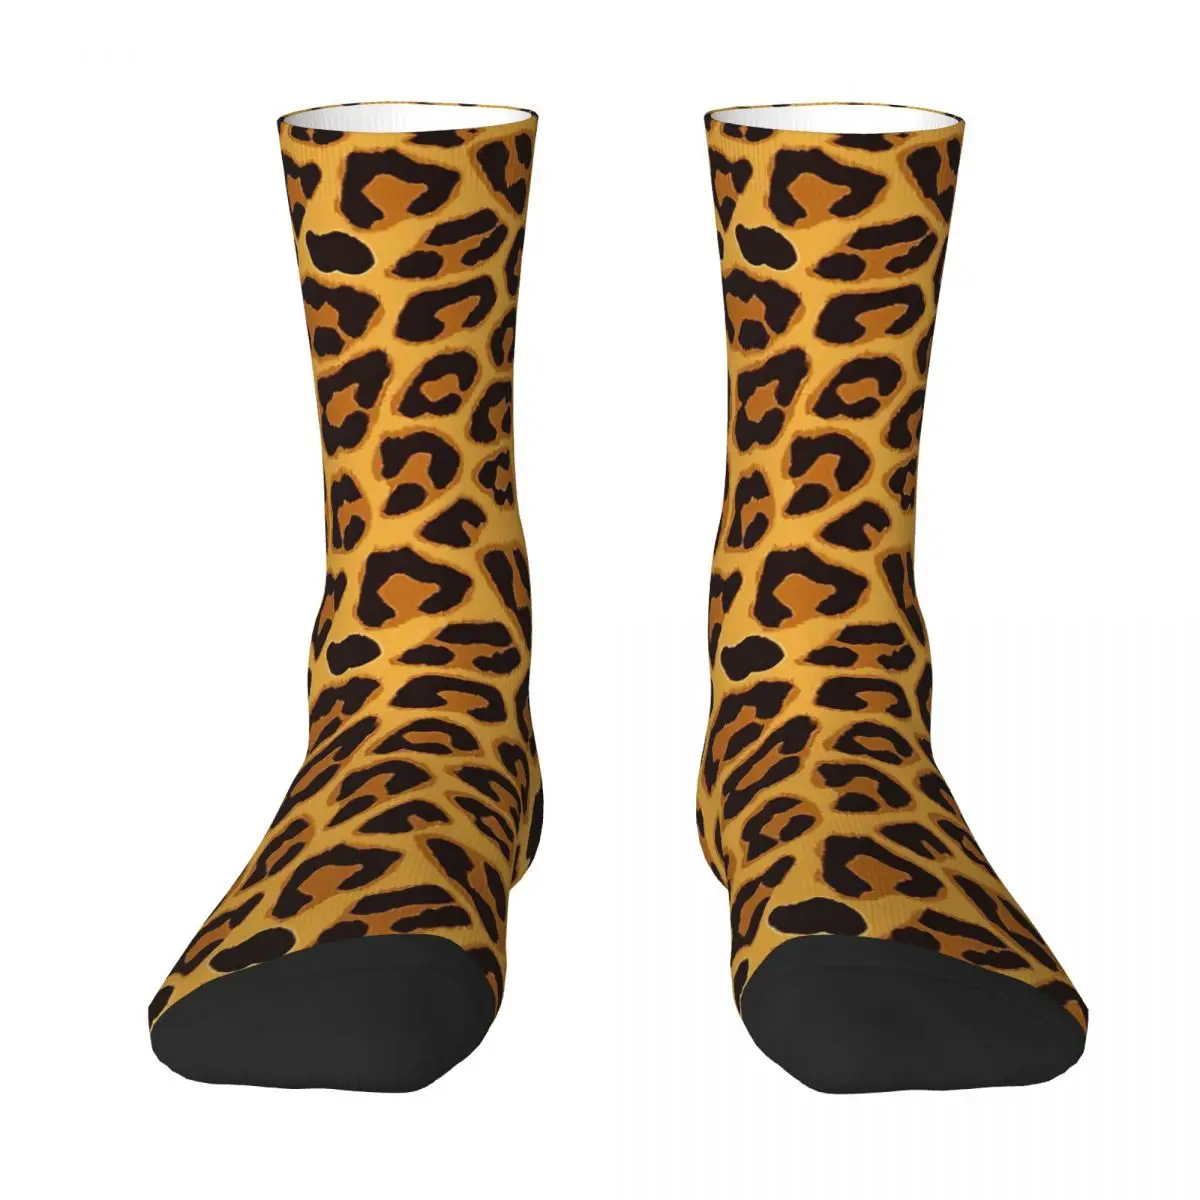 Cheetah Spot Pattern Adult Socks Unisex socks,men Socks women Socks